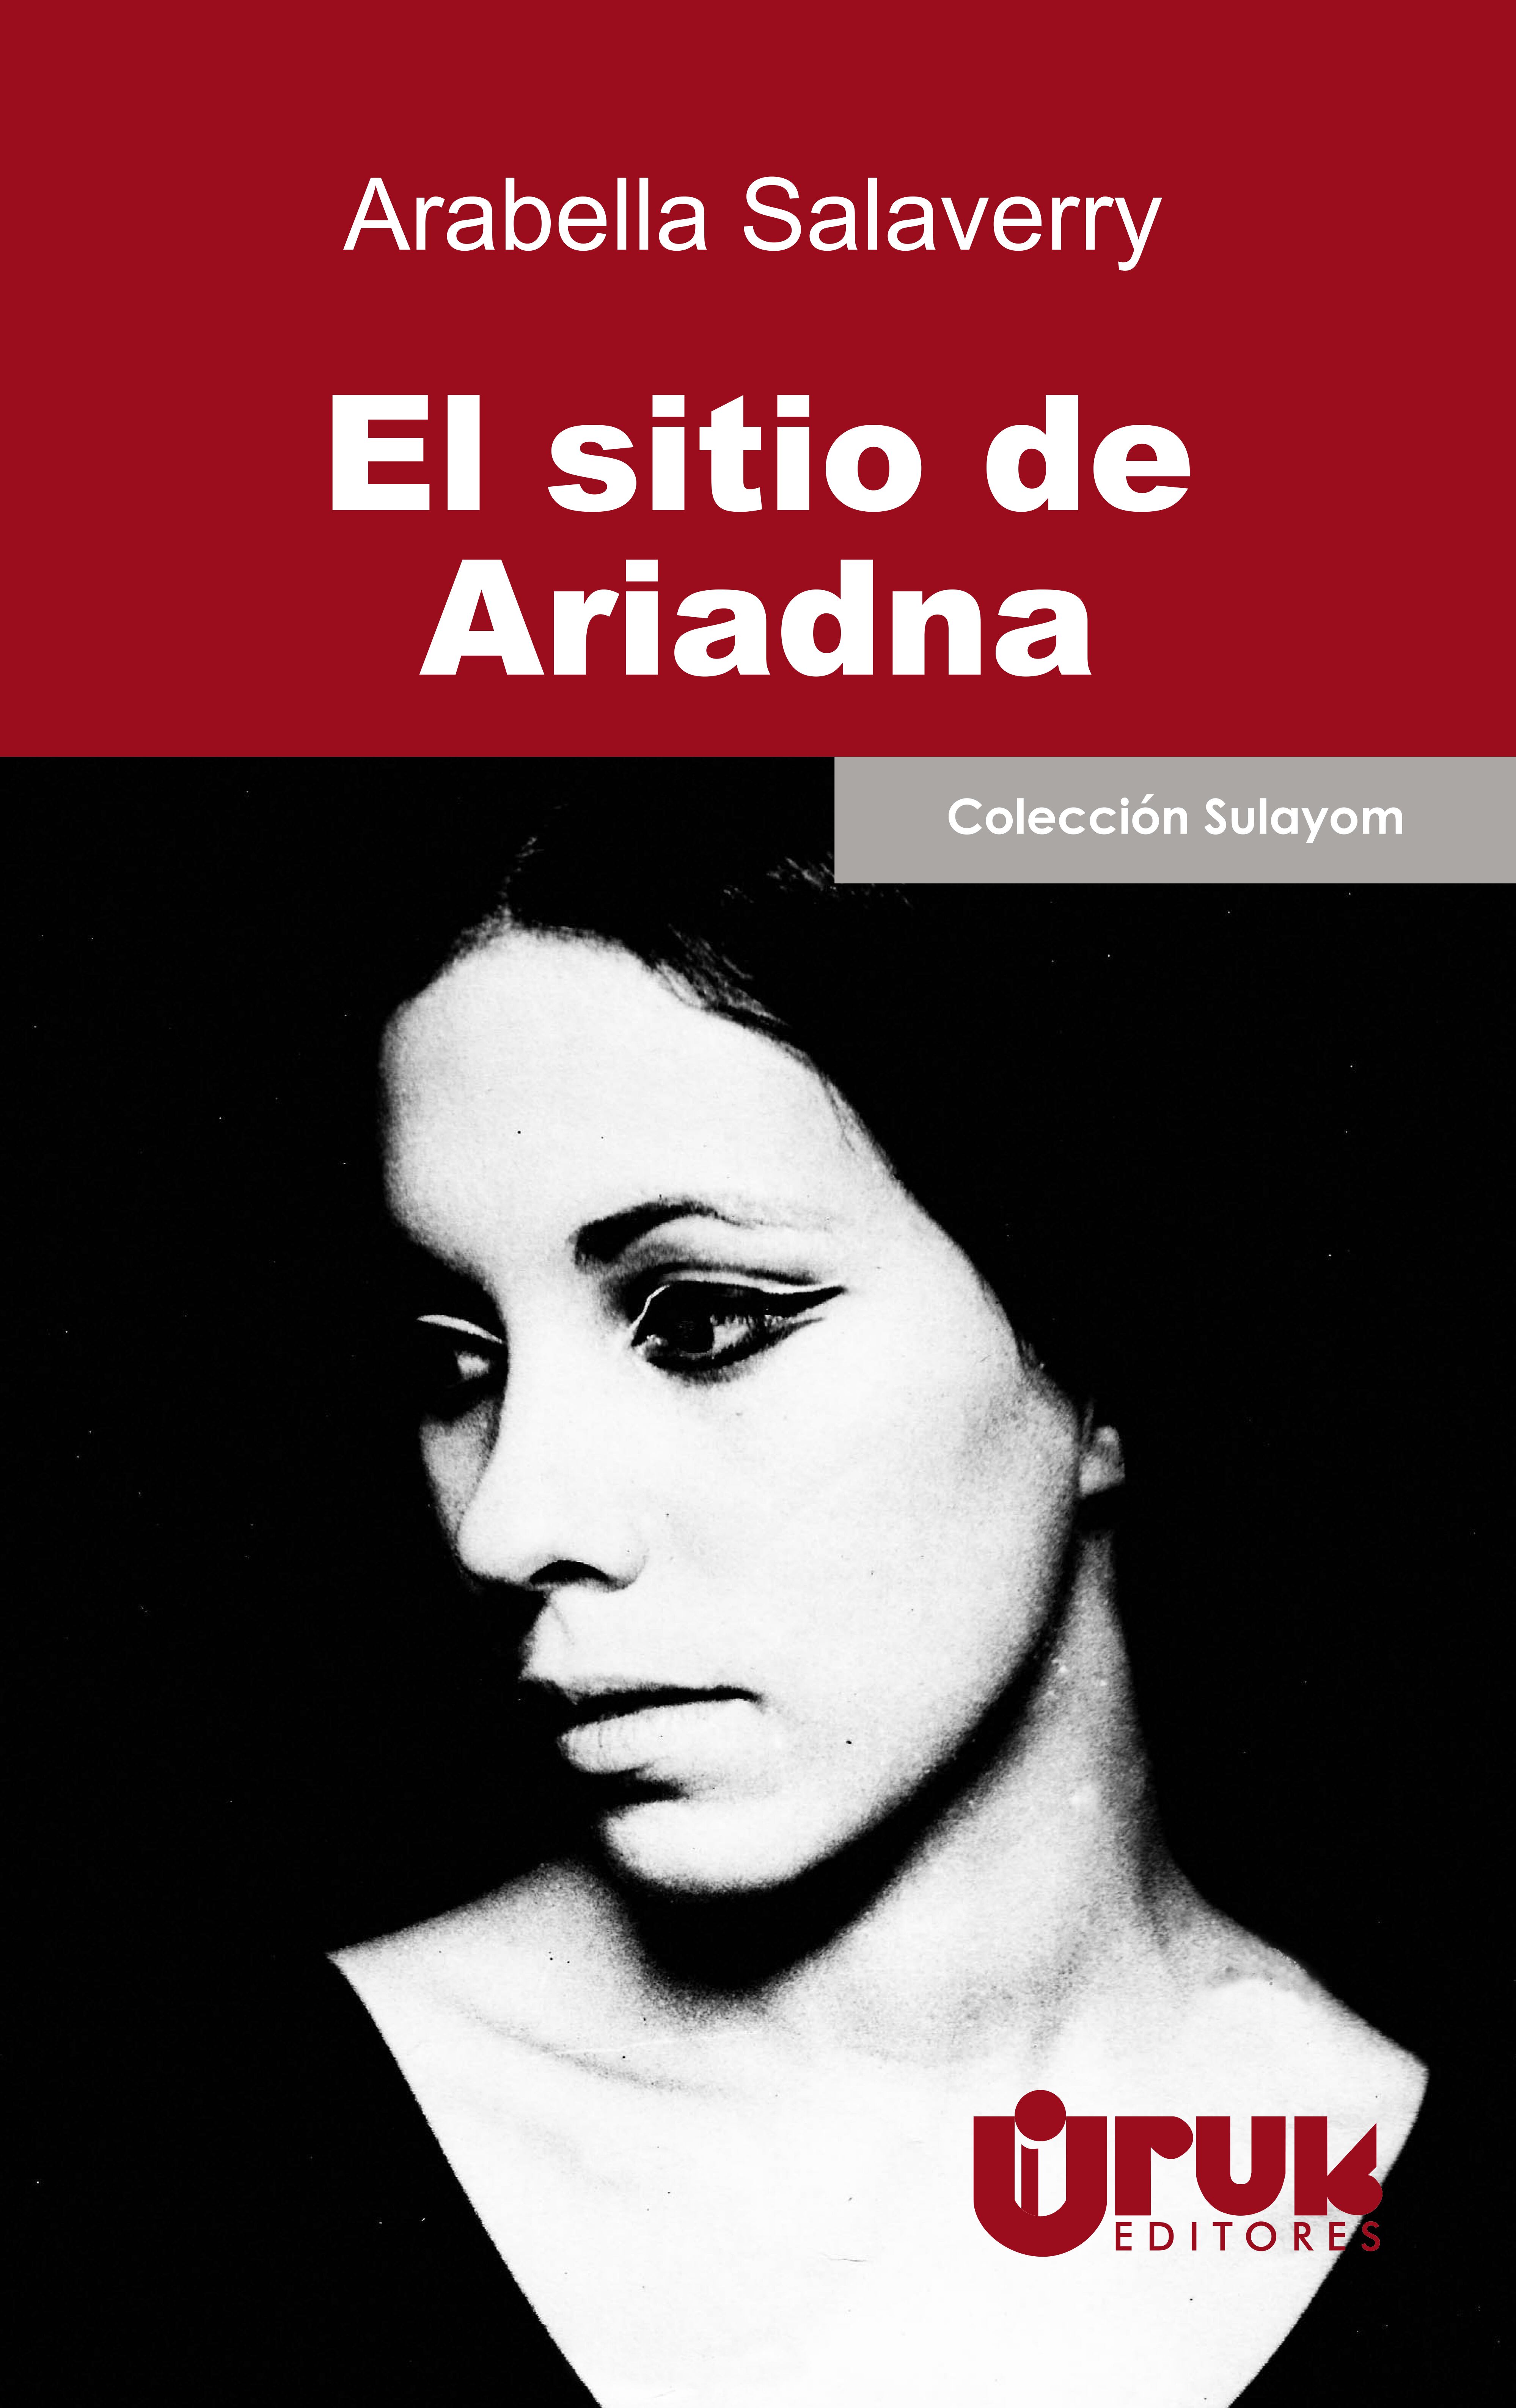 'El sitio de Ariadna' es la novela que publicó Arabella Salaverry en el 2017 con el sello Uruk Editores.